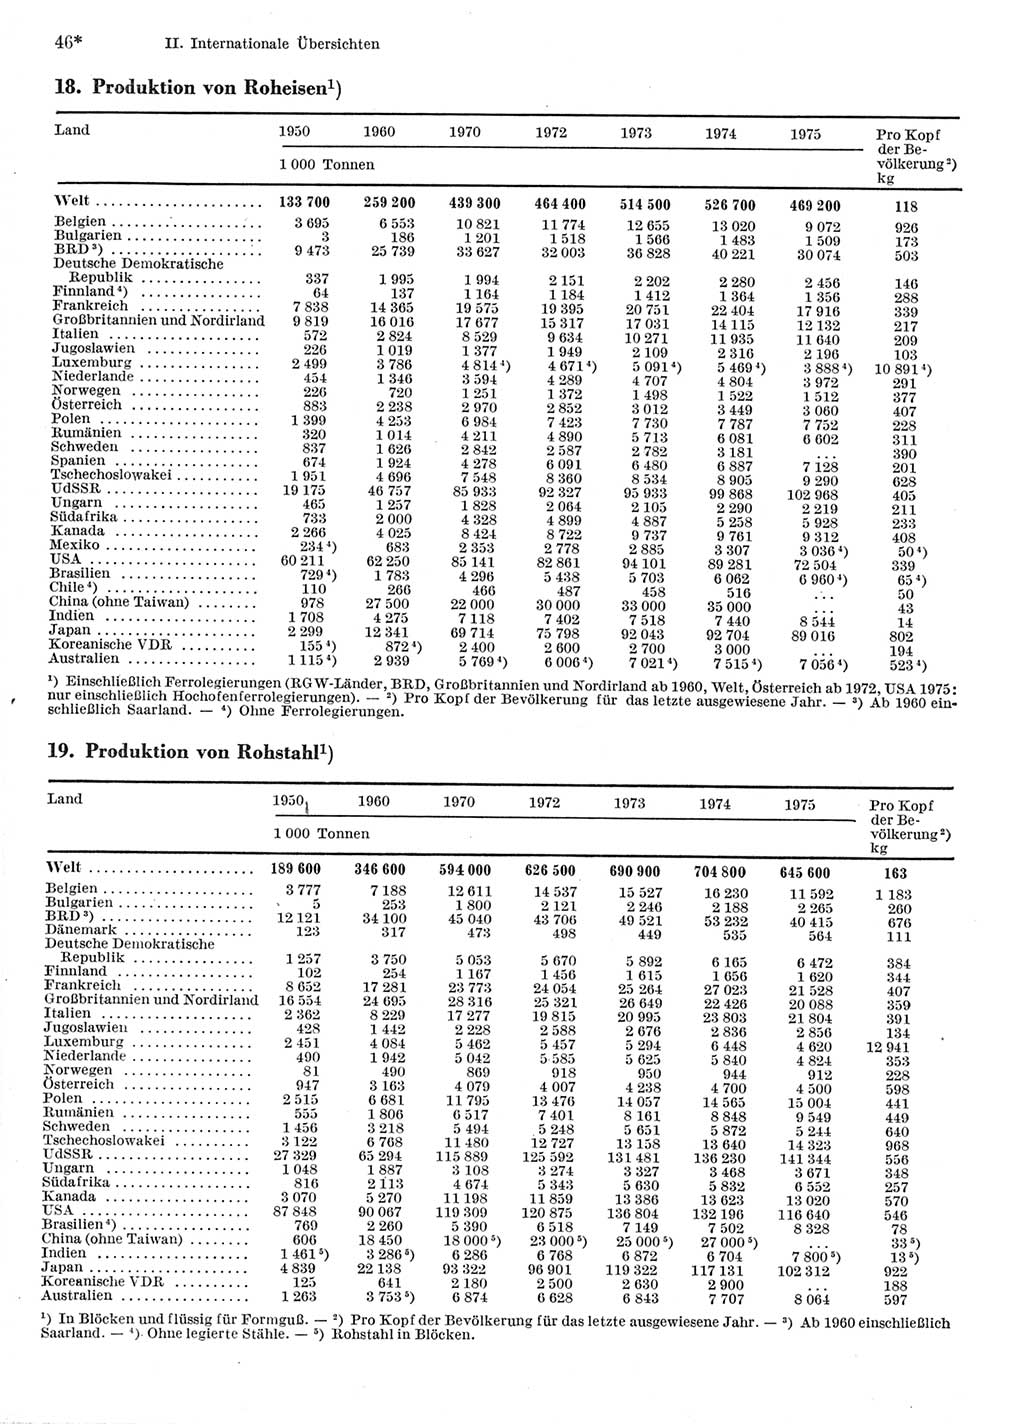 Statistisches Jahrbuch der Deutschen Demokratischen Republik (DDR) 1977, Seite 46 (Stat. Jb. DDR 1977, S. 46)